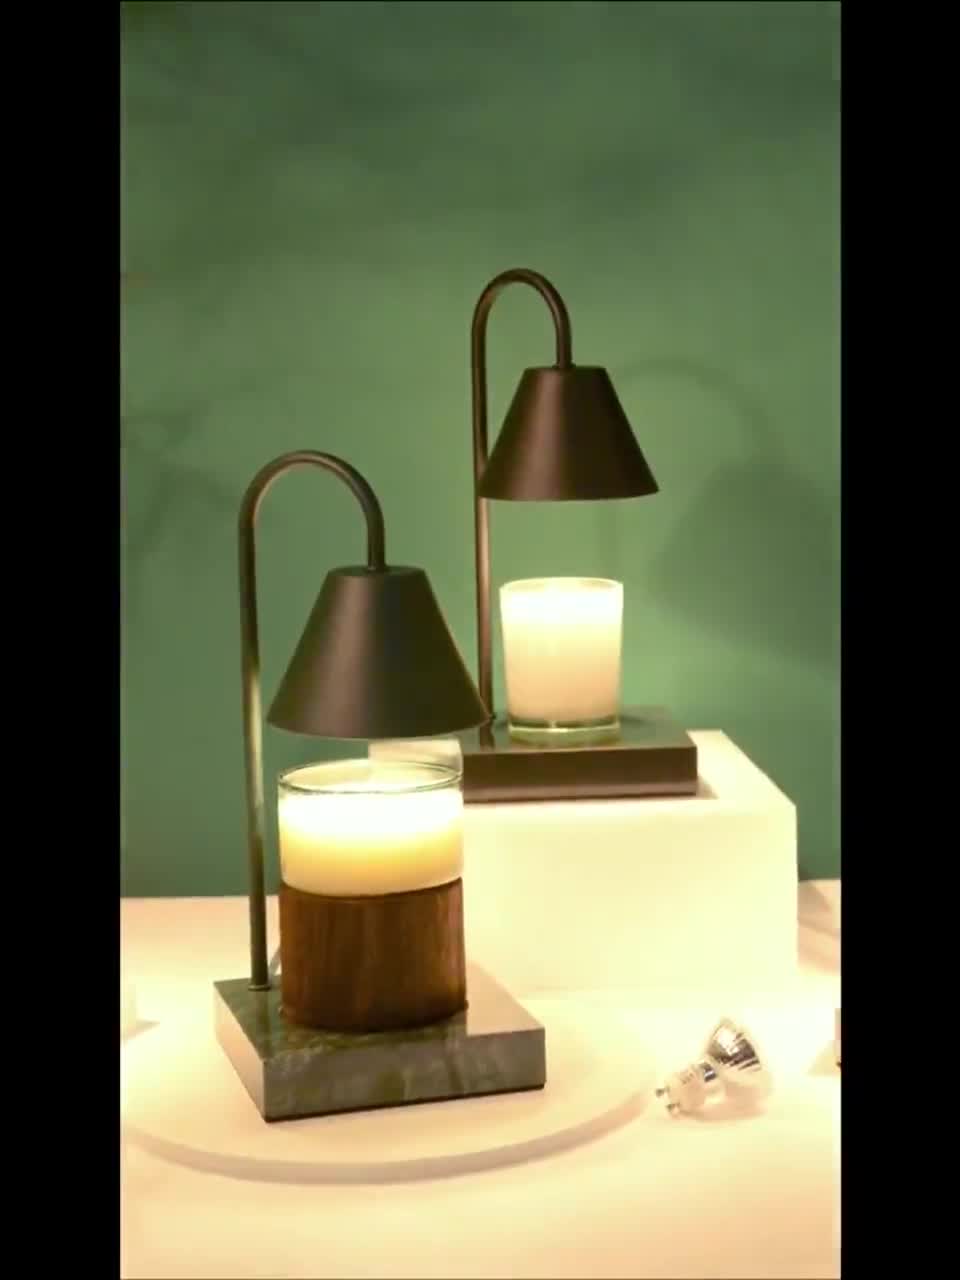 (โปรโมชั่นสุดปัง!!) AKOM [พร้อมส่งจ้า เก็บเงินปลายทาง] candle warmer โคมไฟอุ่นเทียน โคมไฟตั้งโต๊ะ รุ่นเ ราคาถูก!! โคม ไฟ ตั้งโต๊ะ อ่าน หนังสือ โคม ไฟ ตั้งโต๊ะ วิน เท จ โคม ไฟ led ตั้งโต๊ะ โคม ไฟ โต๊ะ ทำงาน